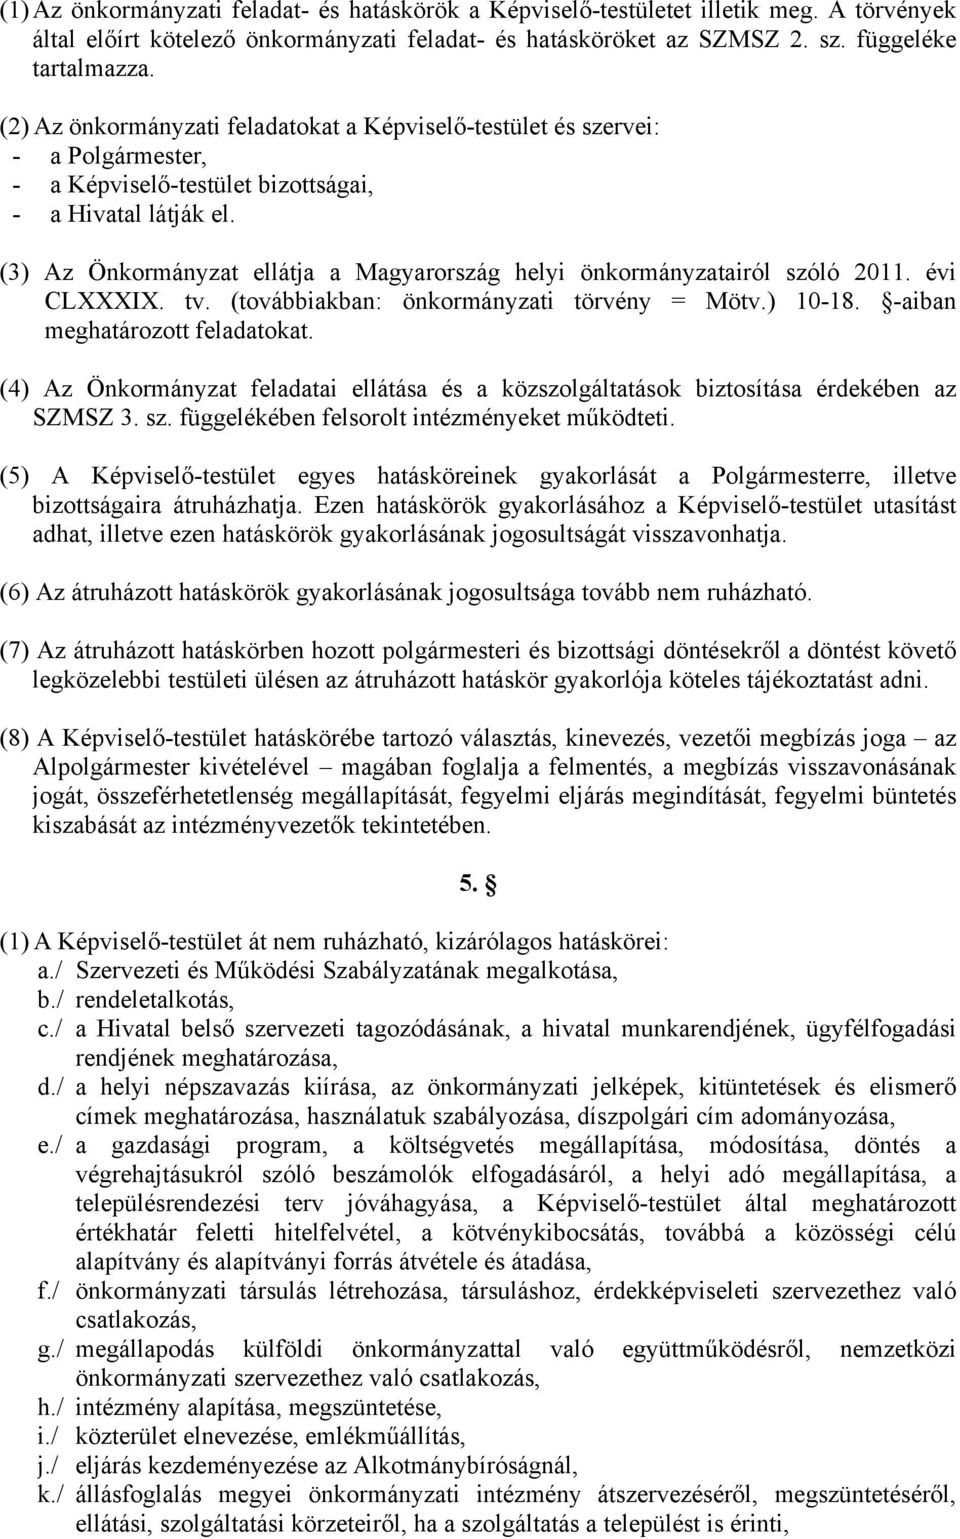 (3) Az Önkormányzat ellátja a Magyarország helyi önkormányzatairól szóló 2011. évi CLXXXIX. tv. (továbbiakban: önkormányzati törvény = Mötv.) 10-18. -aiban meghatározott feladatokat.